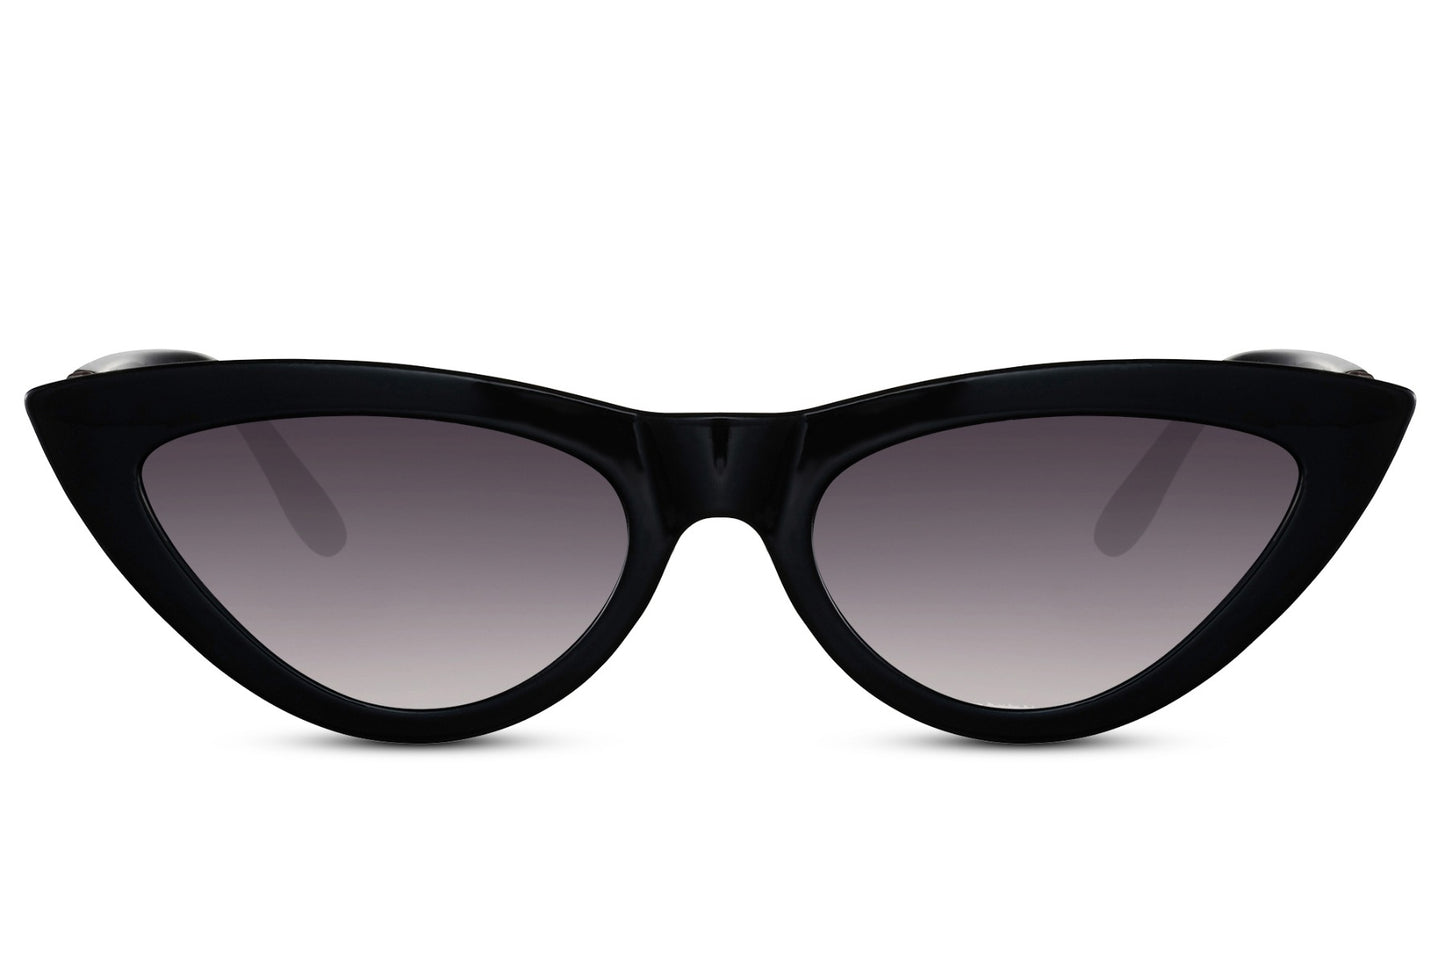 Designer Black Cat Eye Sunglasses For Women